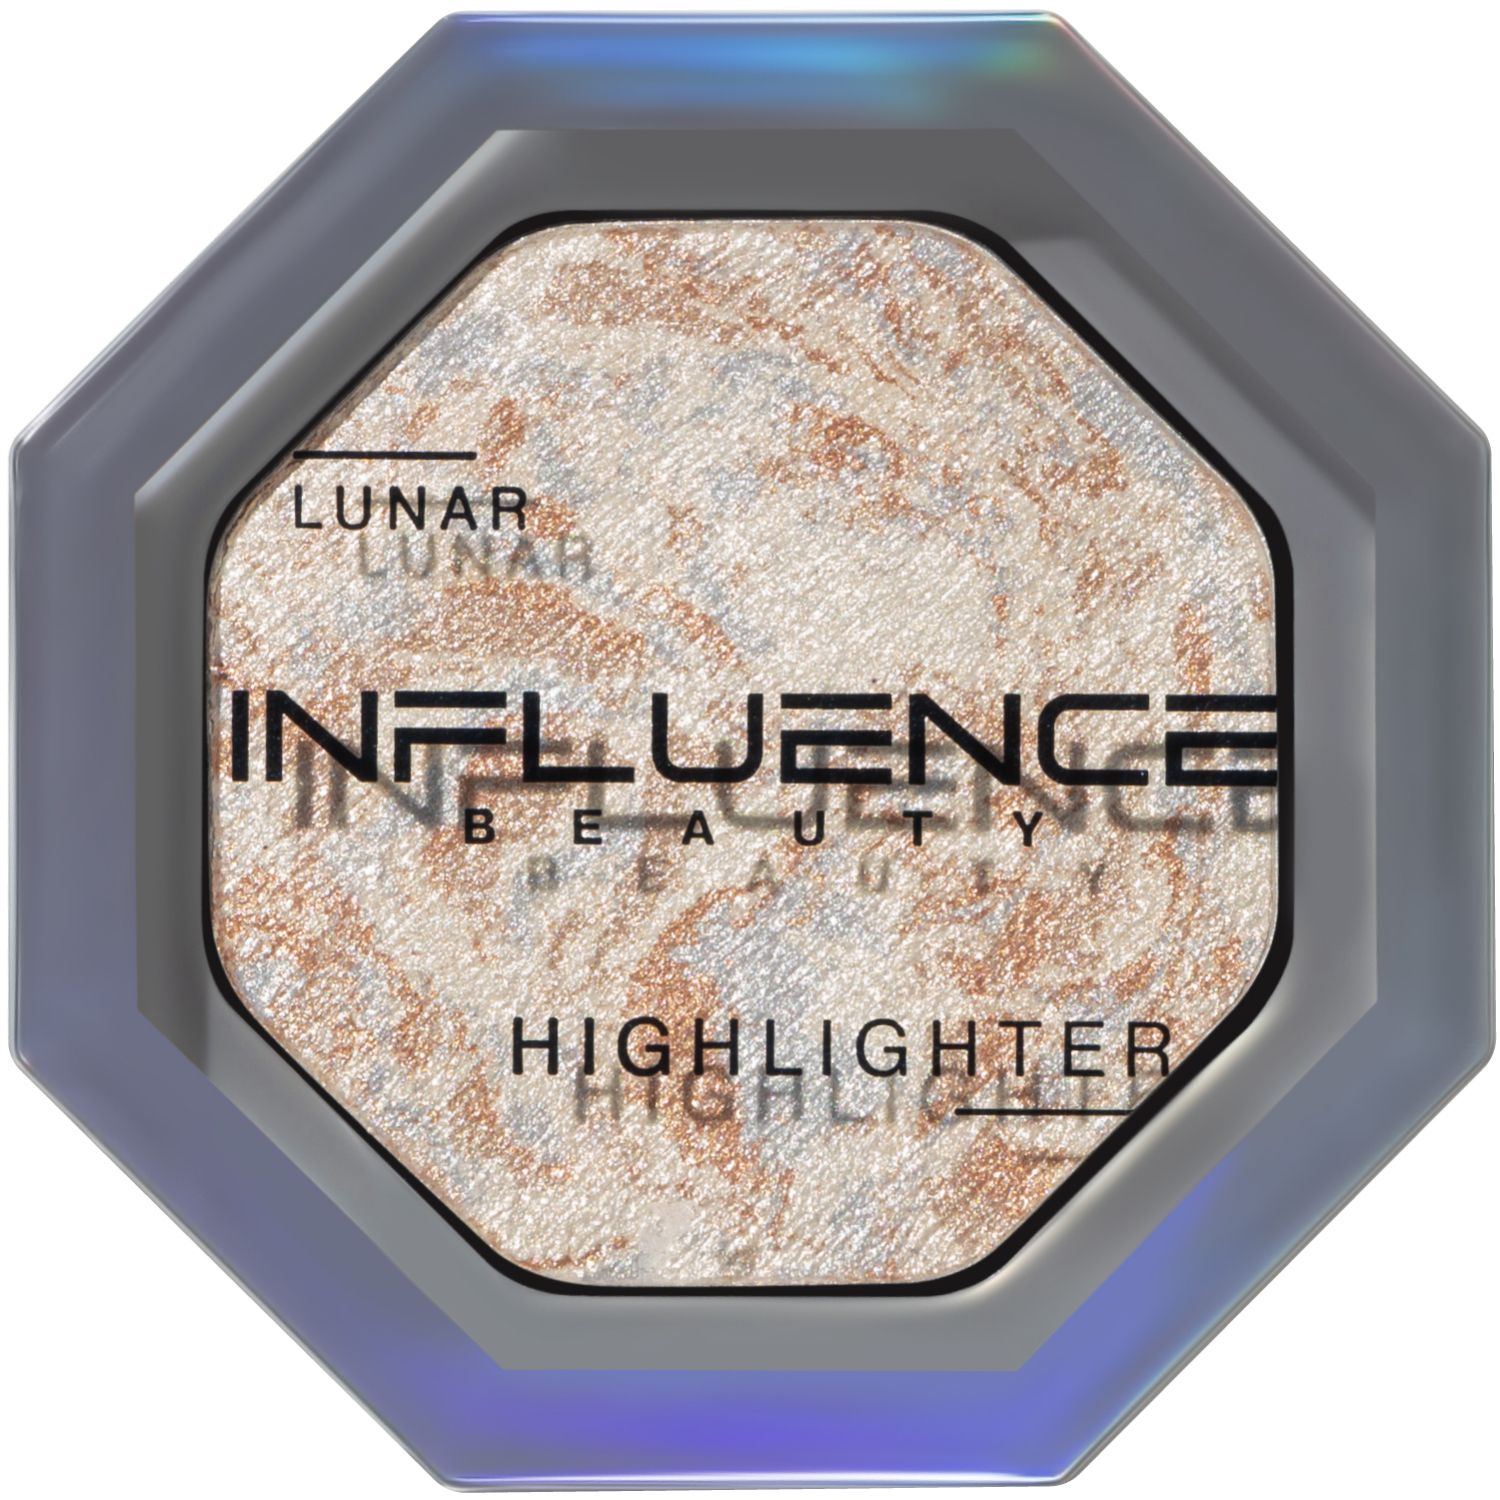 Хайлайтер Influence Beauty LUNAR , эффект деликатного сияния, серебряный, 4,8 г too cool for school палетка хайлайтер artclass by rodin highlighter luminous